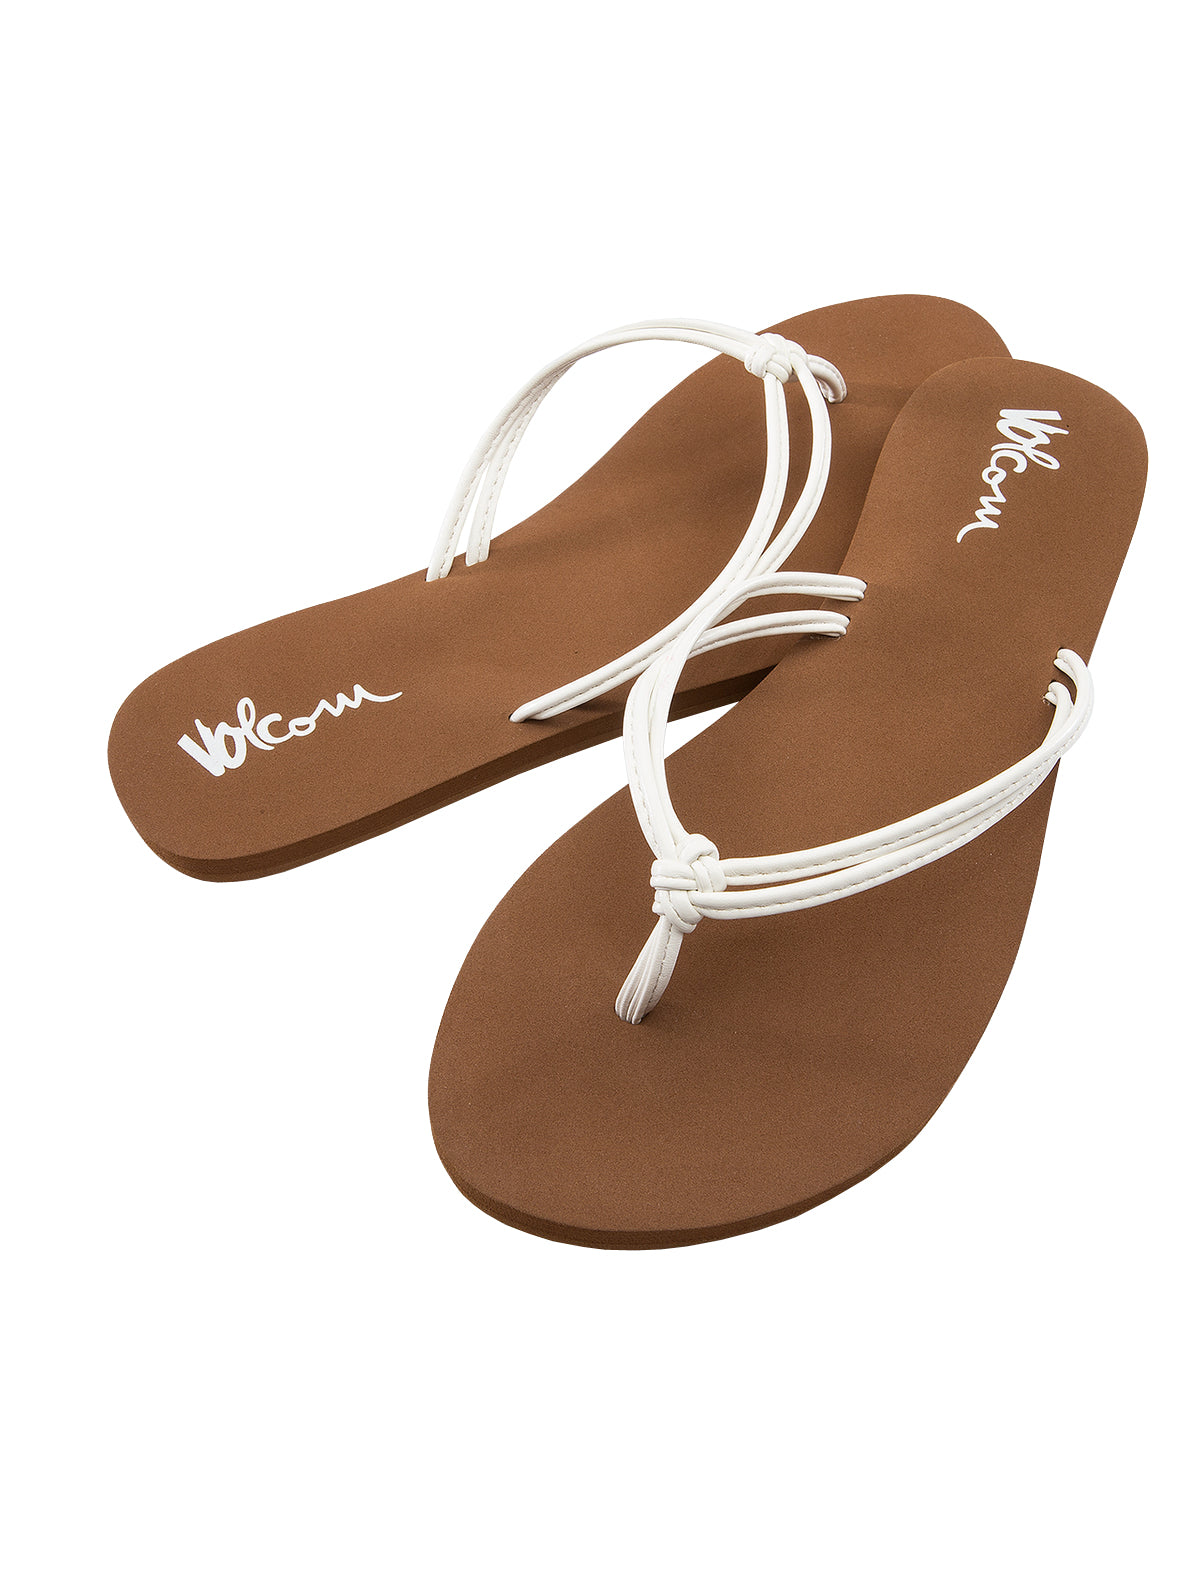 Volcom Forever and Ever 2 Womens Sandal WHT23-White 9